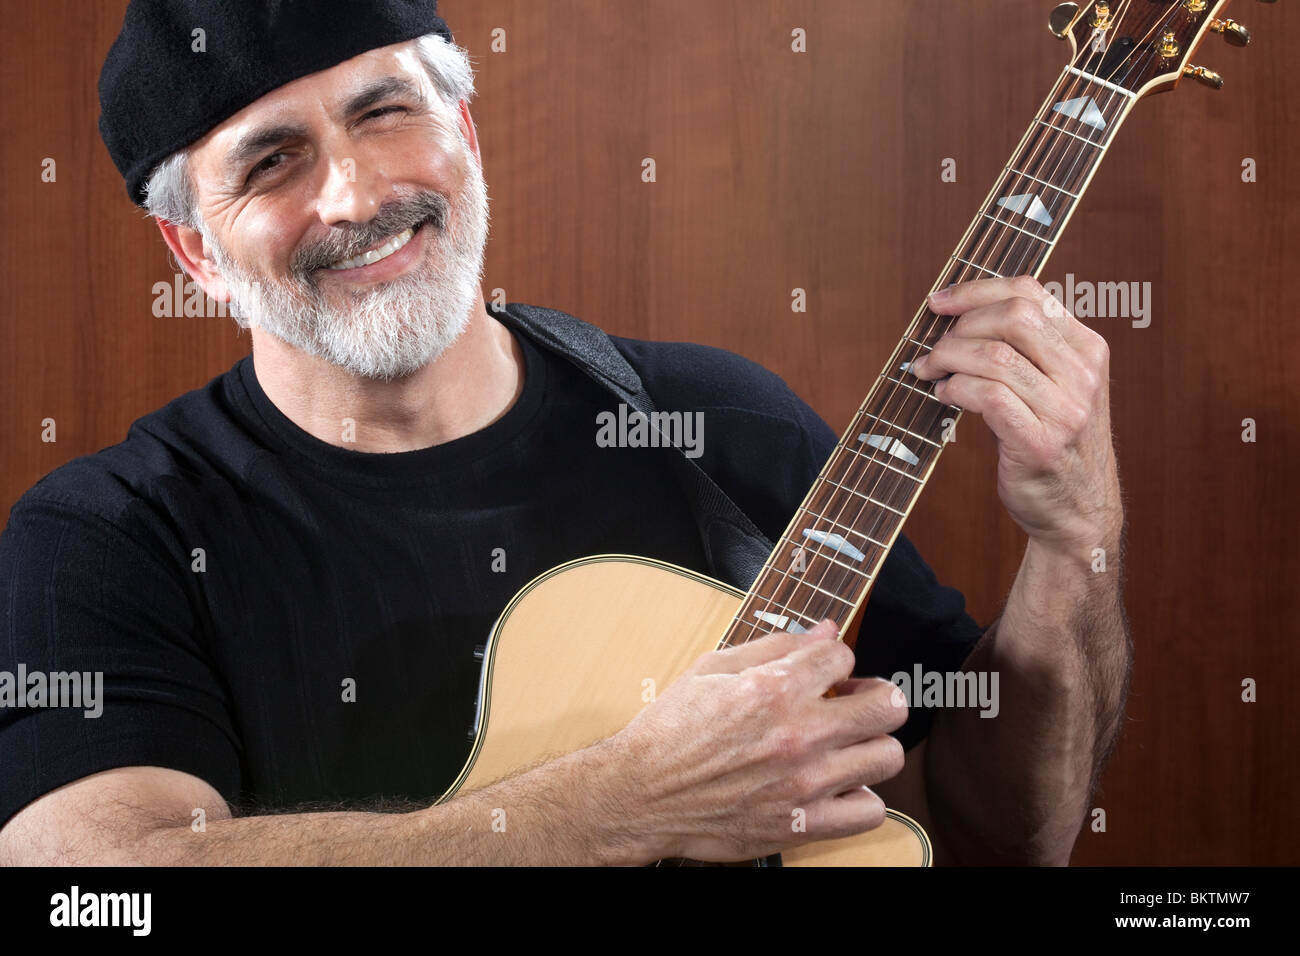 Porträt von einem Mann mittleren Alters, eine schwarze Mütze und T-shirt und eine akustische Gitarre zu spielen. Er lächelt in die Kamera. Stockfoto